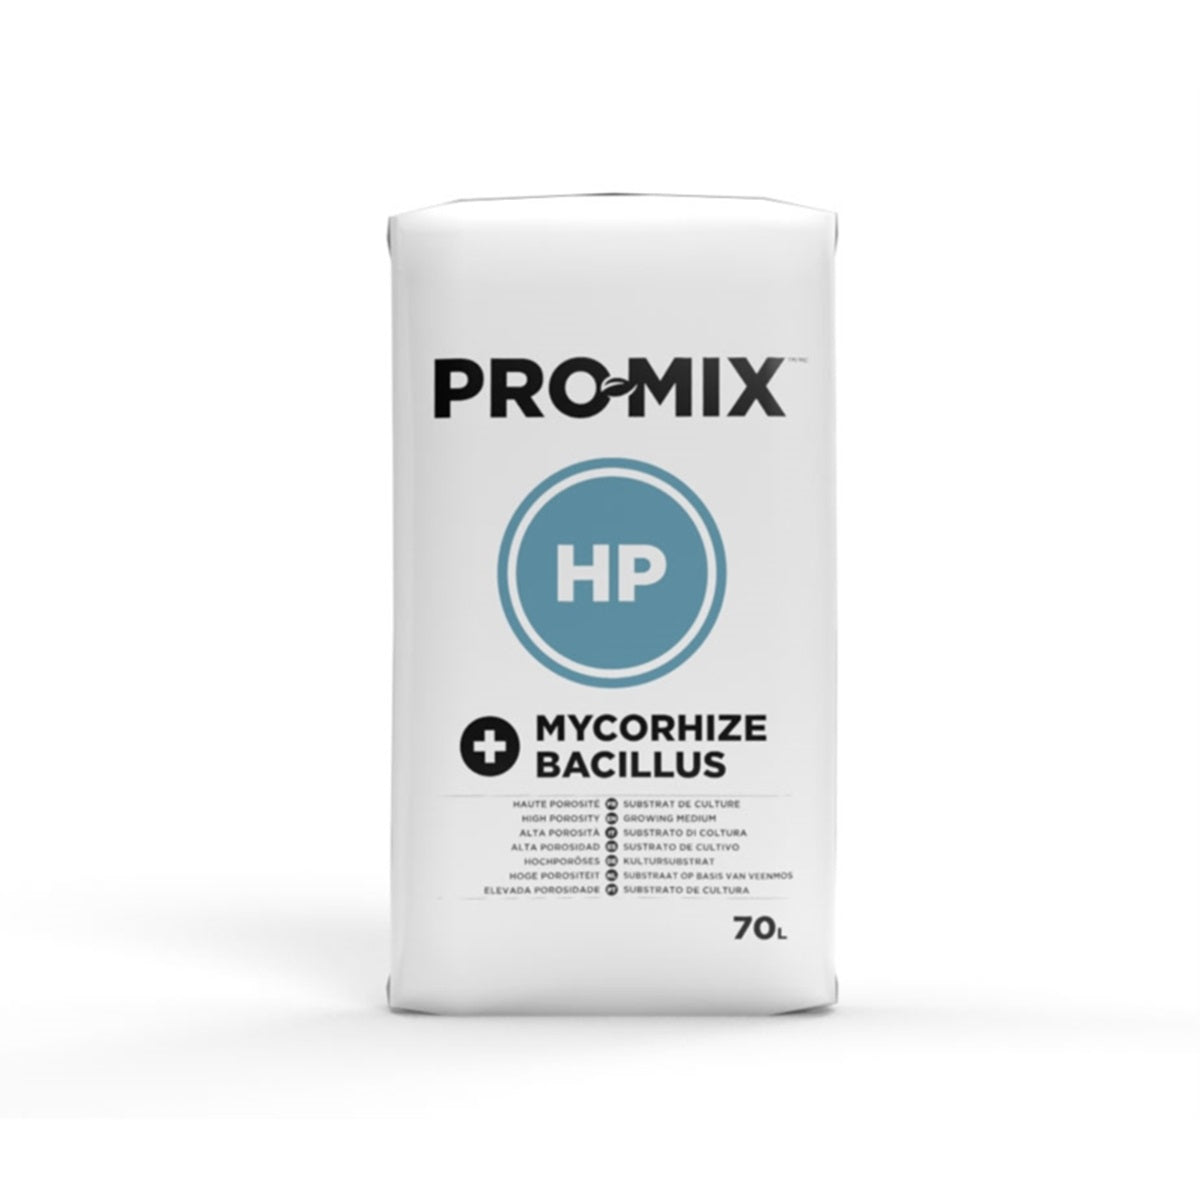 Premier Tech Promix HP Mycorhize + Bacillus 70 liters